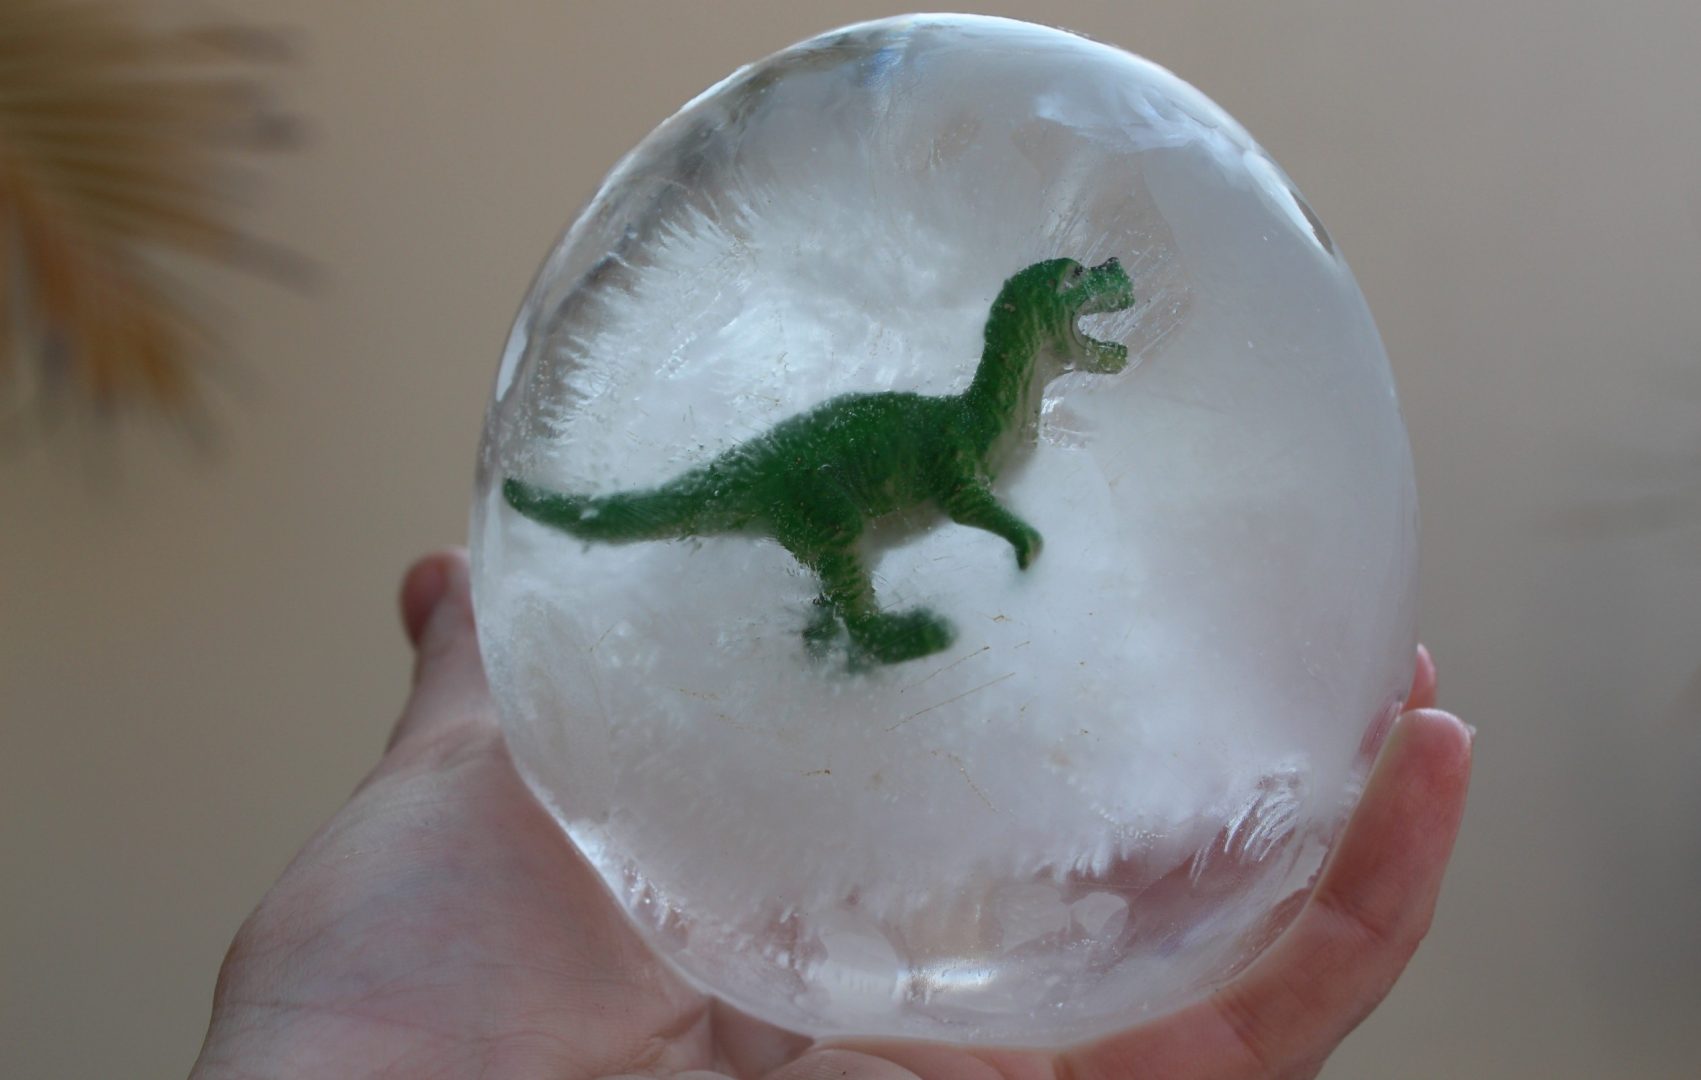 Brincadeiras de dinossauros: uma bola de gelo com um dinossauro de brinquedo dentro